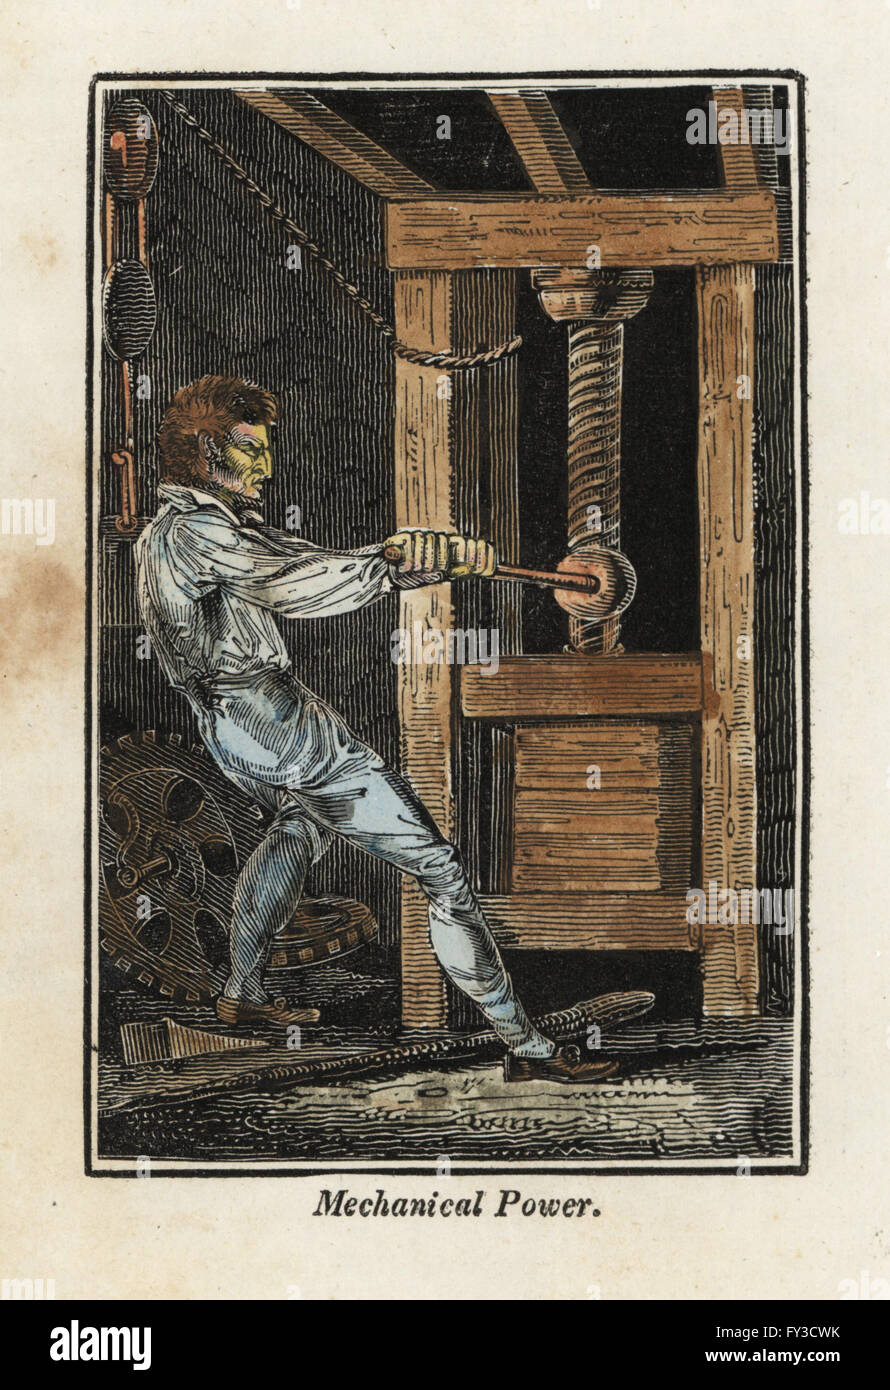 Un lavoratore usando energia meccanica per premere la carta in un mulino. Handcolored xilografia incisione dal libro di inglese commerciale e la biblioteca delle arti utili, Phillips, Londra, 1818. Foto Stock